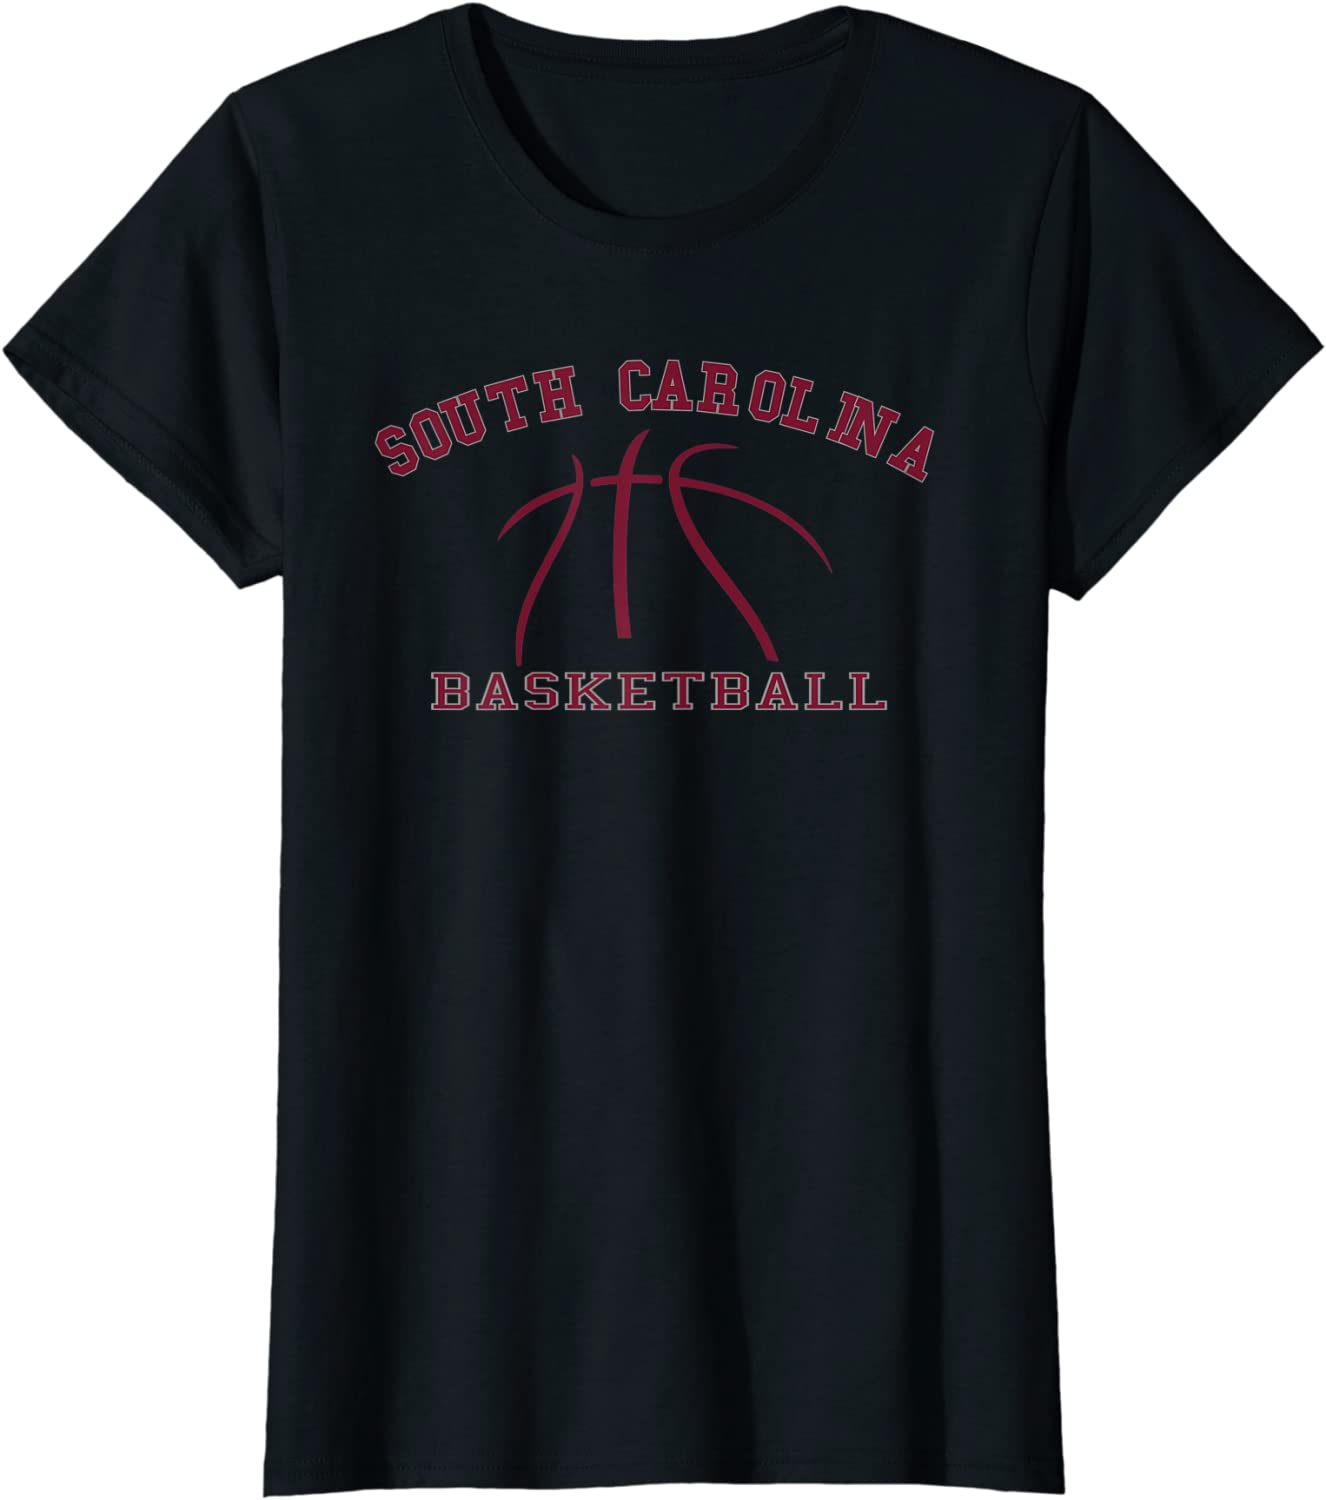 Women's Shirt South Carolina Basketball Fan Apparel Hoops Gear T-Shirt - image 1 of 4